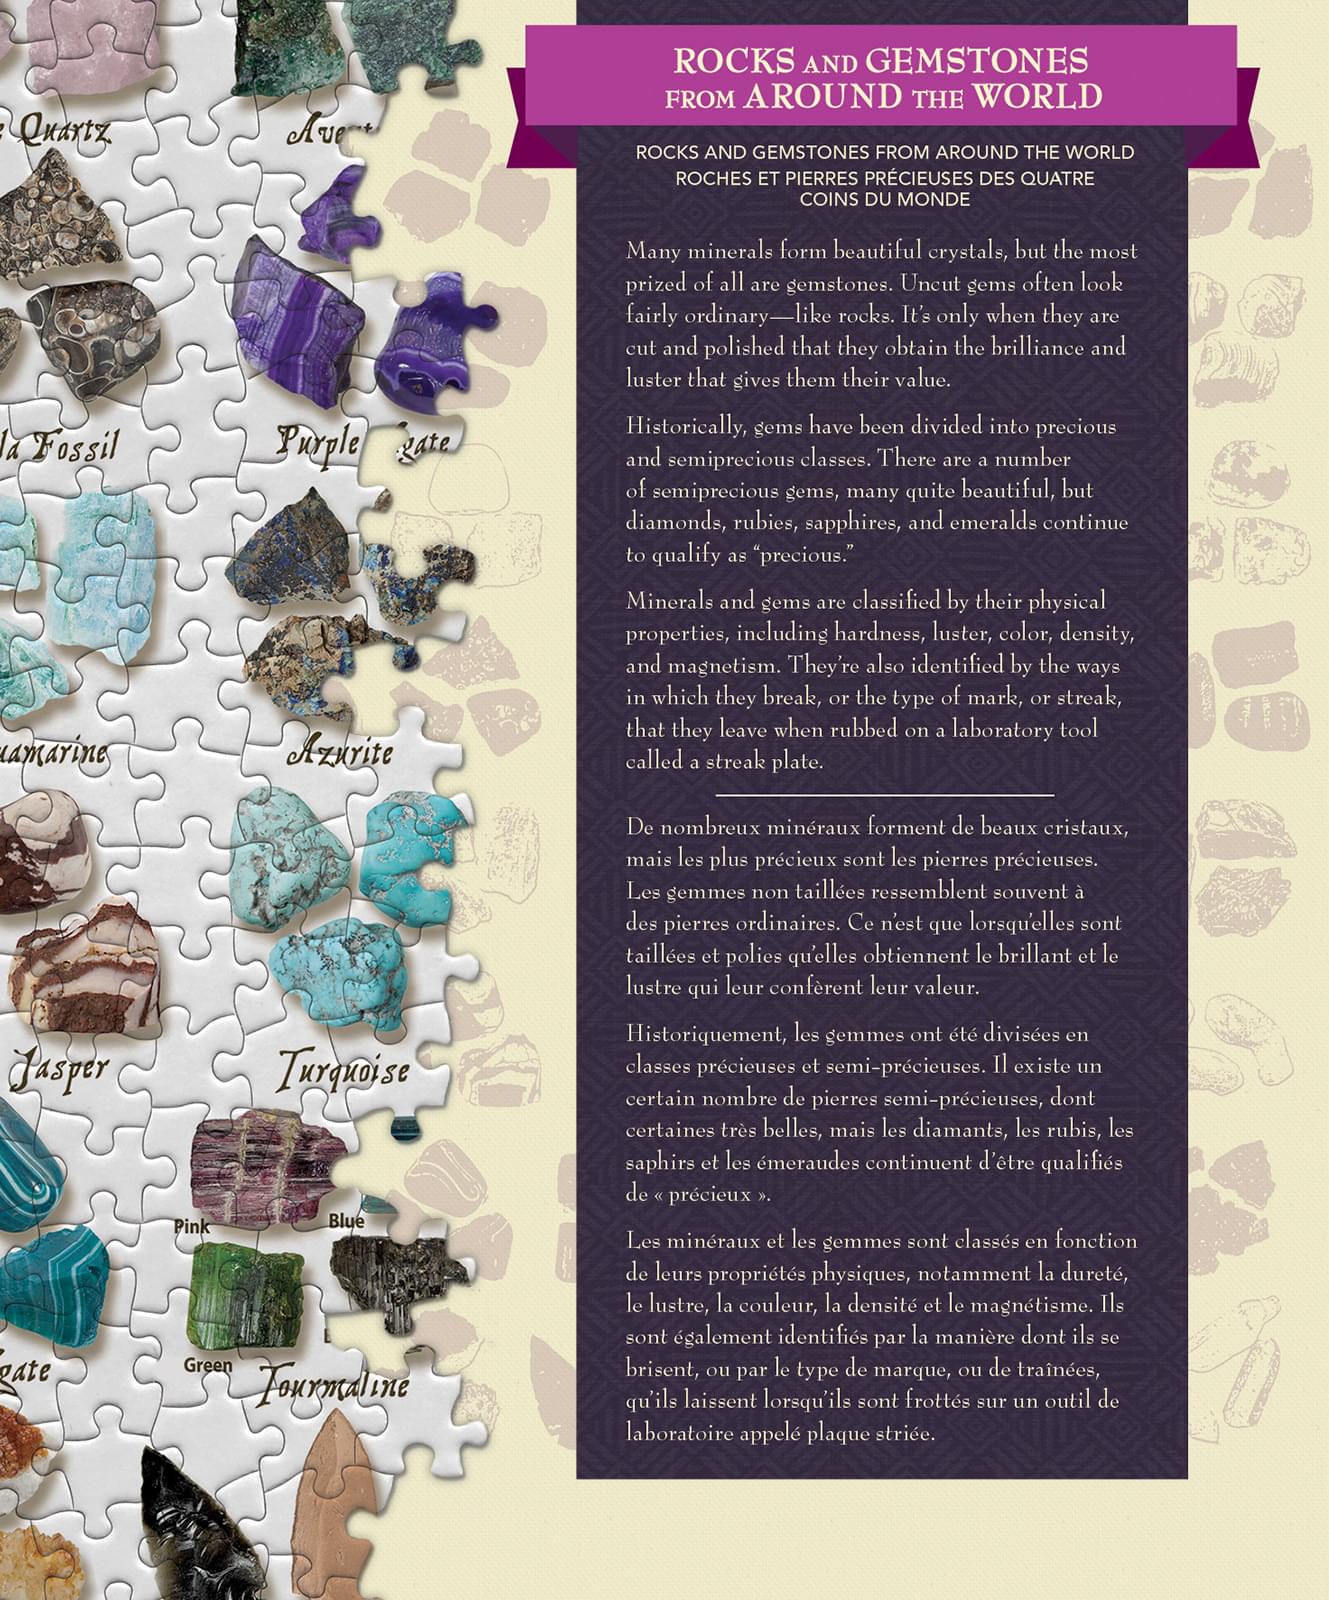 Rocks & Gemstones from Around the World 1000 Piece Linen Jigsaw Puzzle